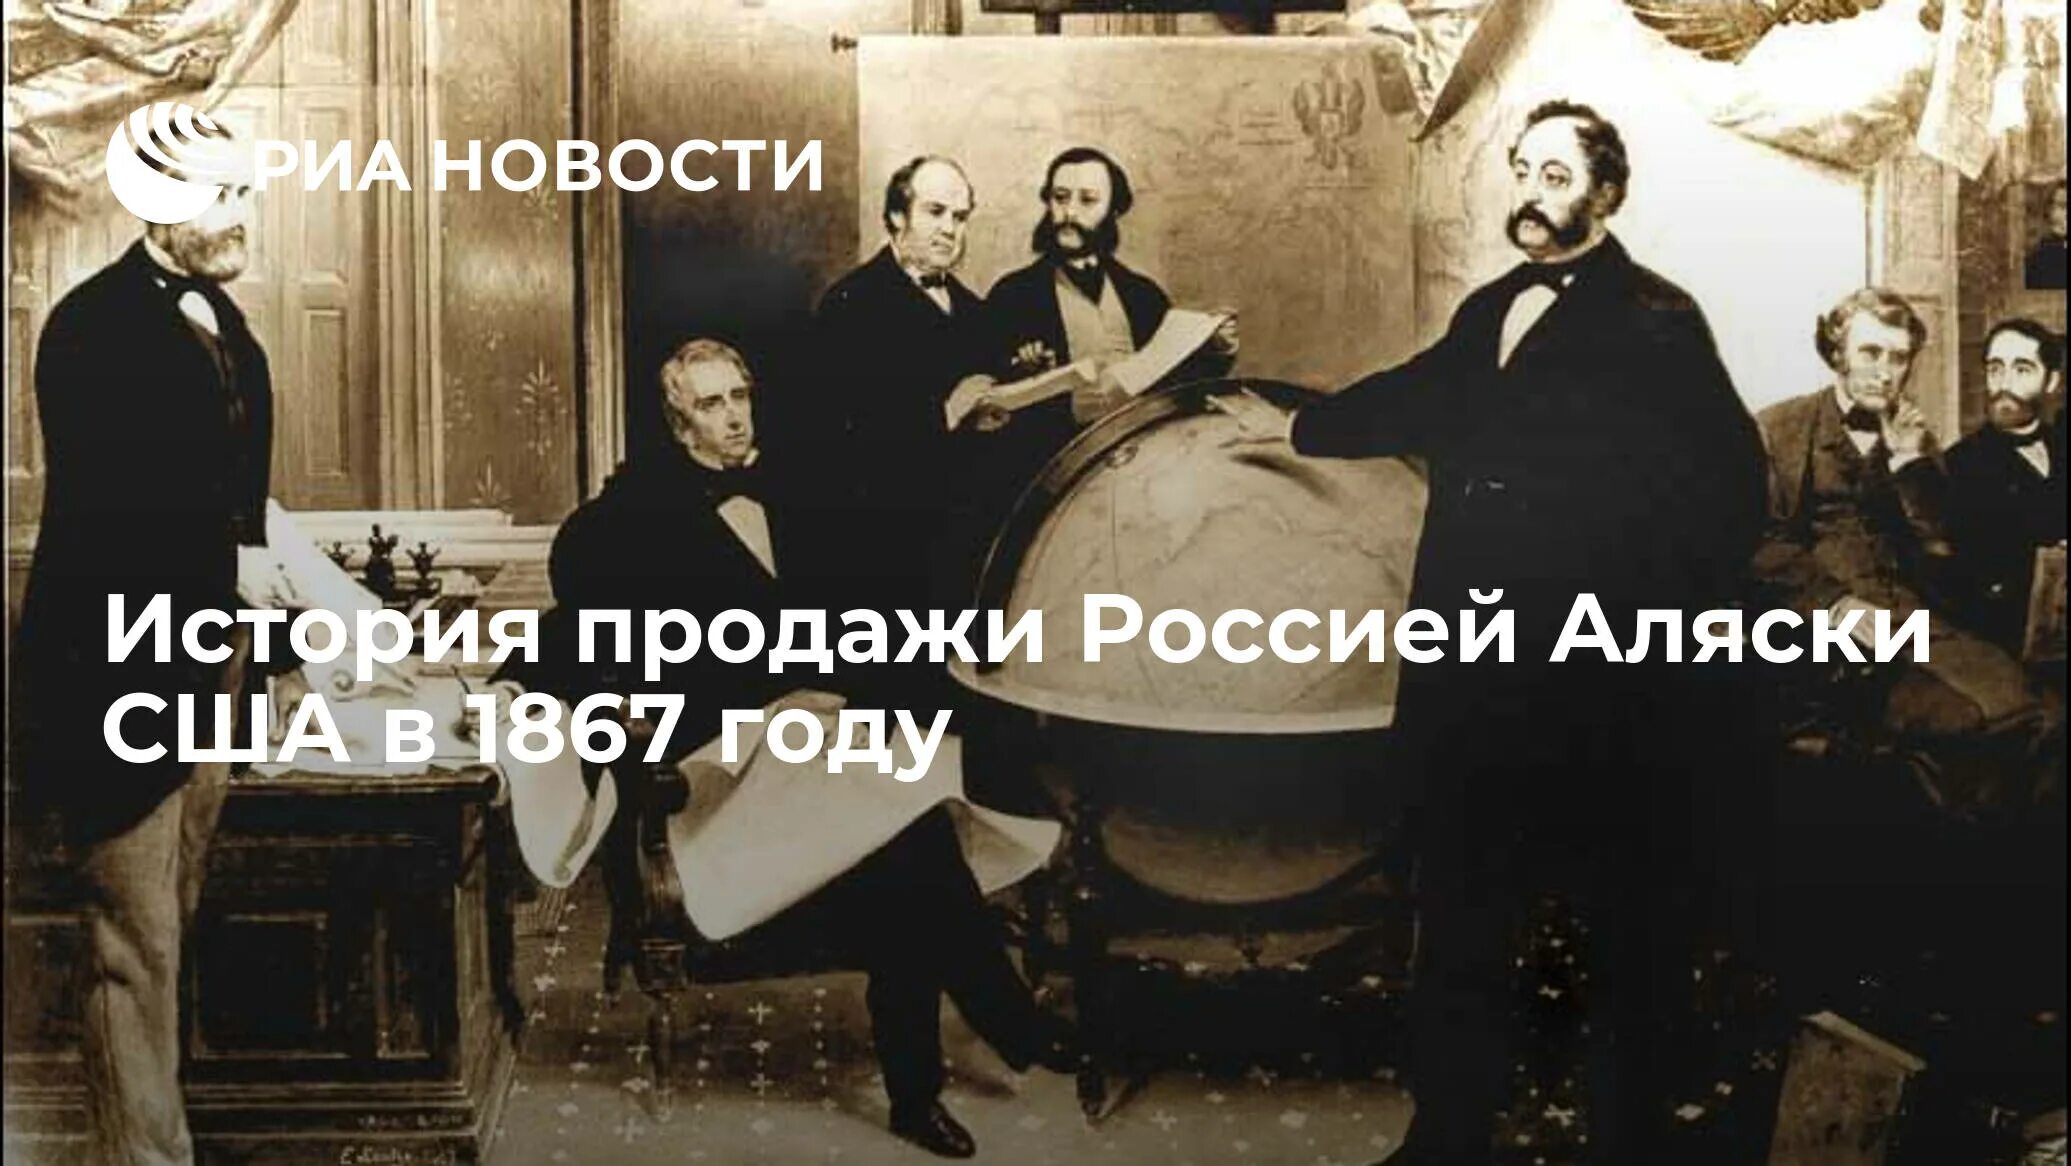 Продажа аляски 1867. 1867 Год в истории России события. 1867 Год кто правил в России. Что было в России в 1867 году.